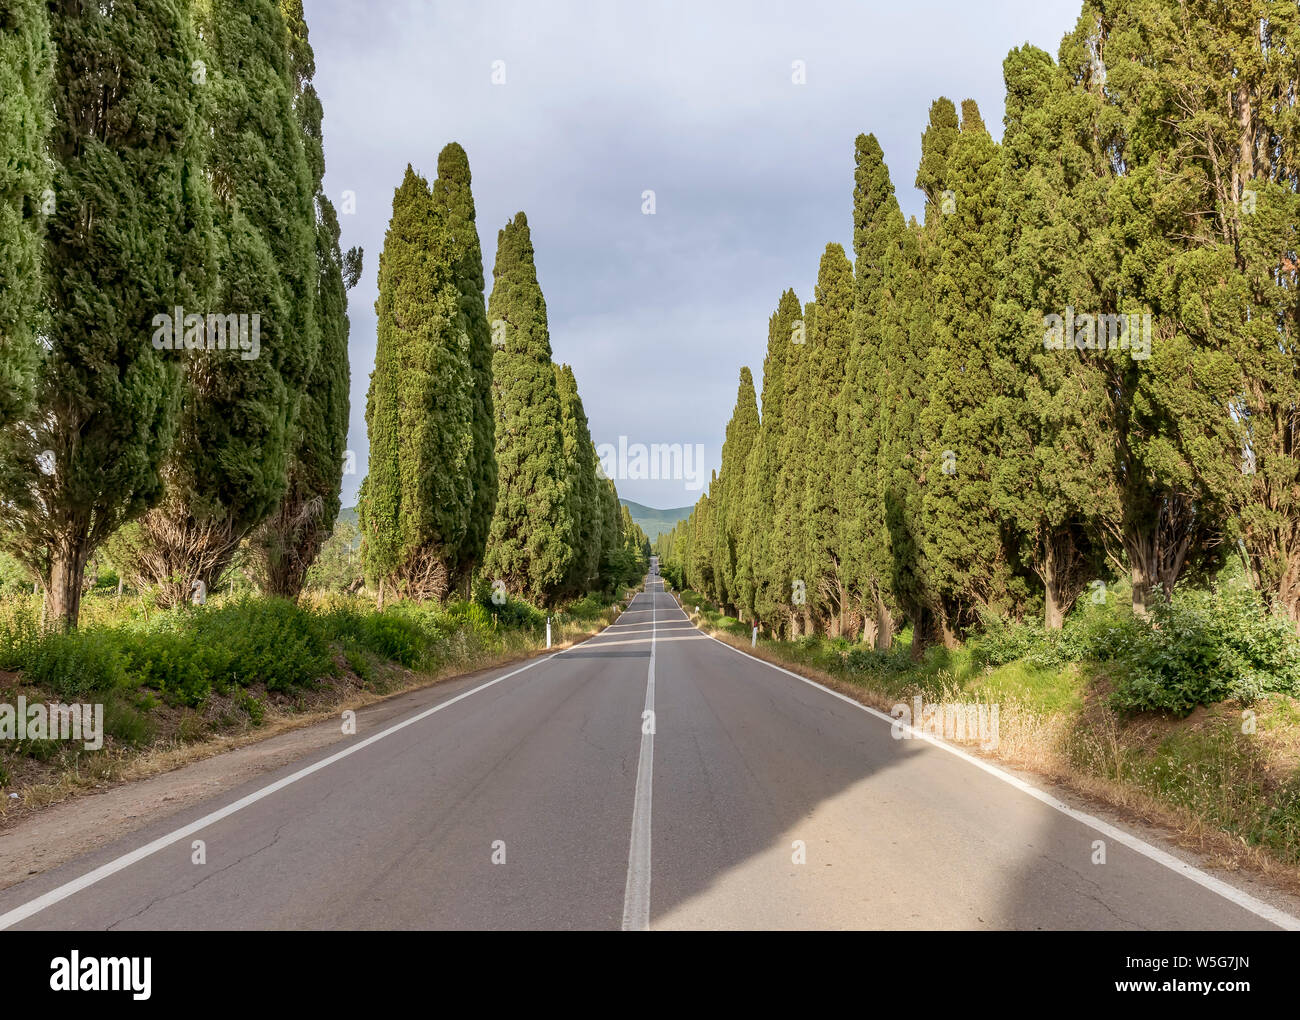 La célèbre route bordée de cyprès menant au charmant village de Bolgheri, Toscane, Italie Banque D'Images